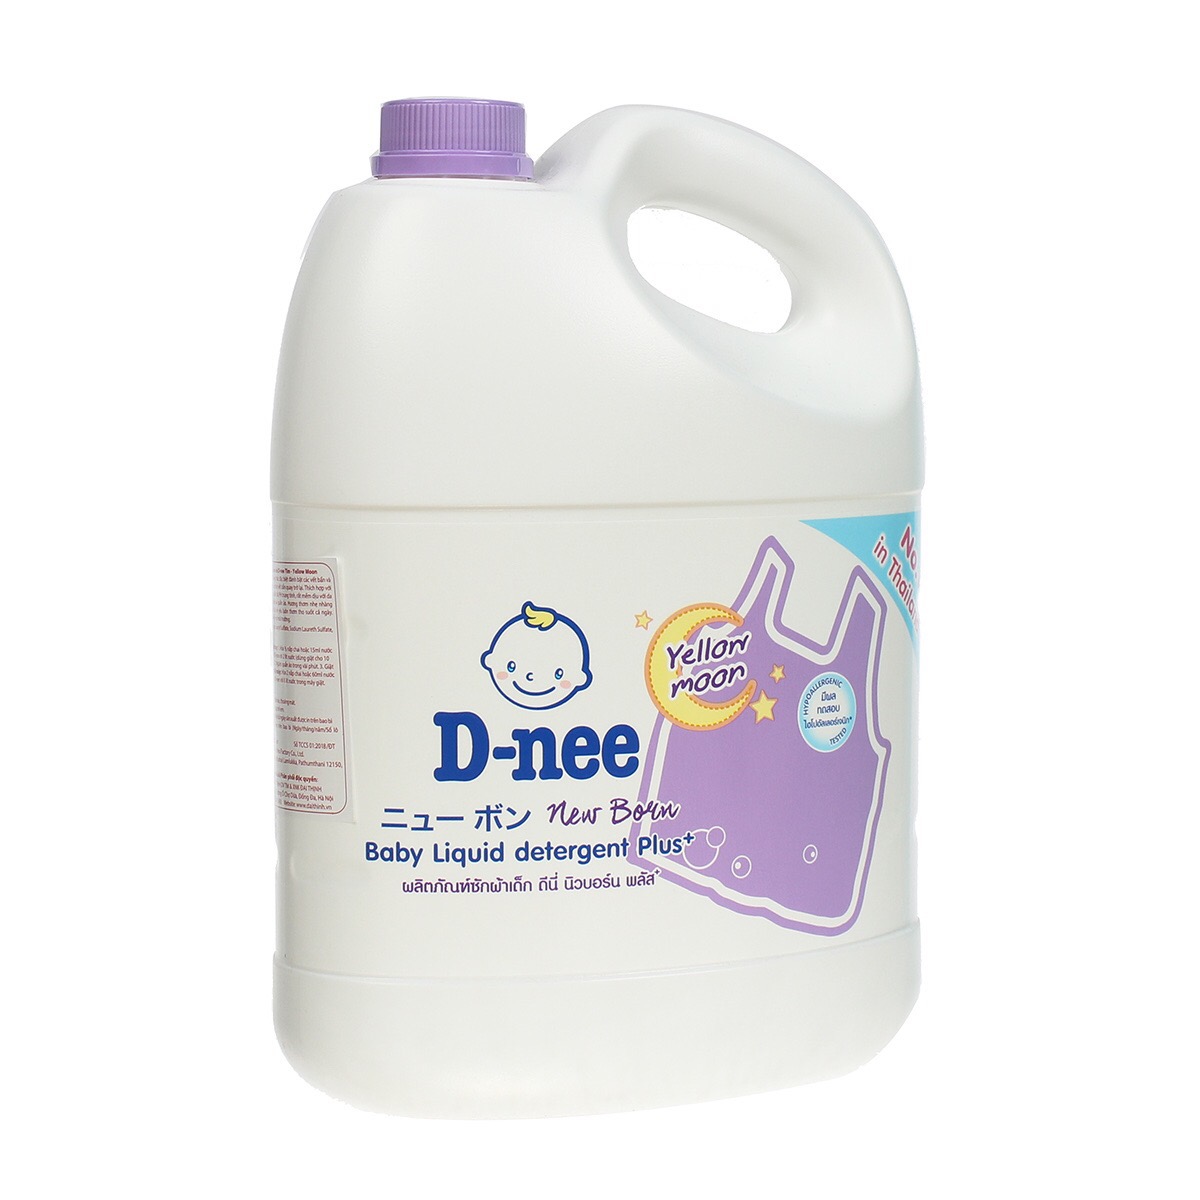 Nước giặt D-nee cho bé chai 3000 ml - Hàng chính hãng